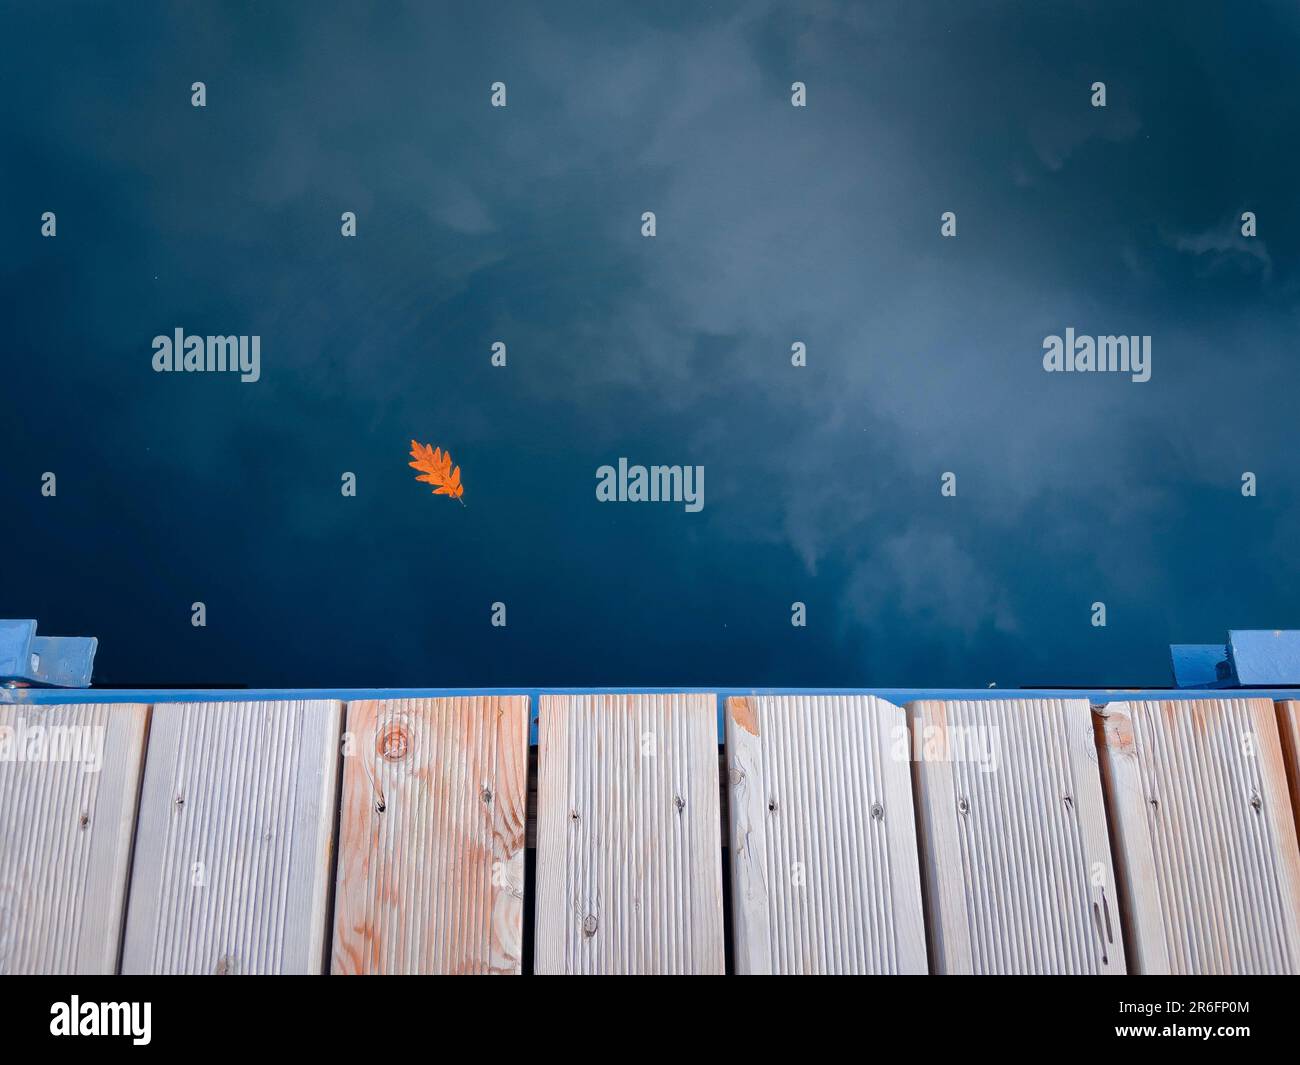 Ein leuchtendes orangefarbenes Blatt, das sanft im stillen Wasser an einem Dock in der Nähe eines Sandstrands schwimmt und eine ruhige und friedliche Atmosphäre schafft Stockfoto